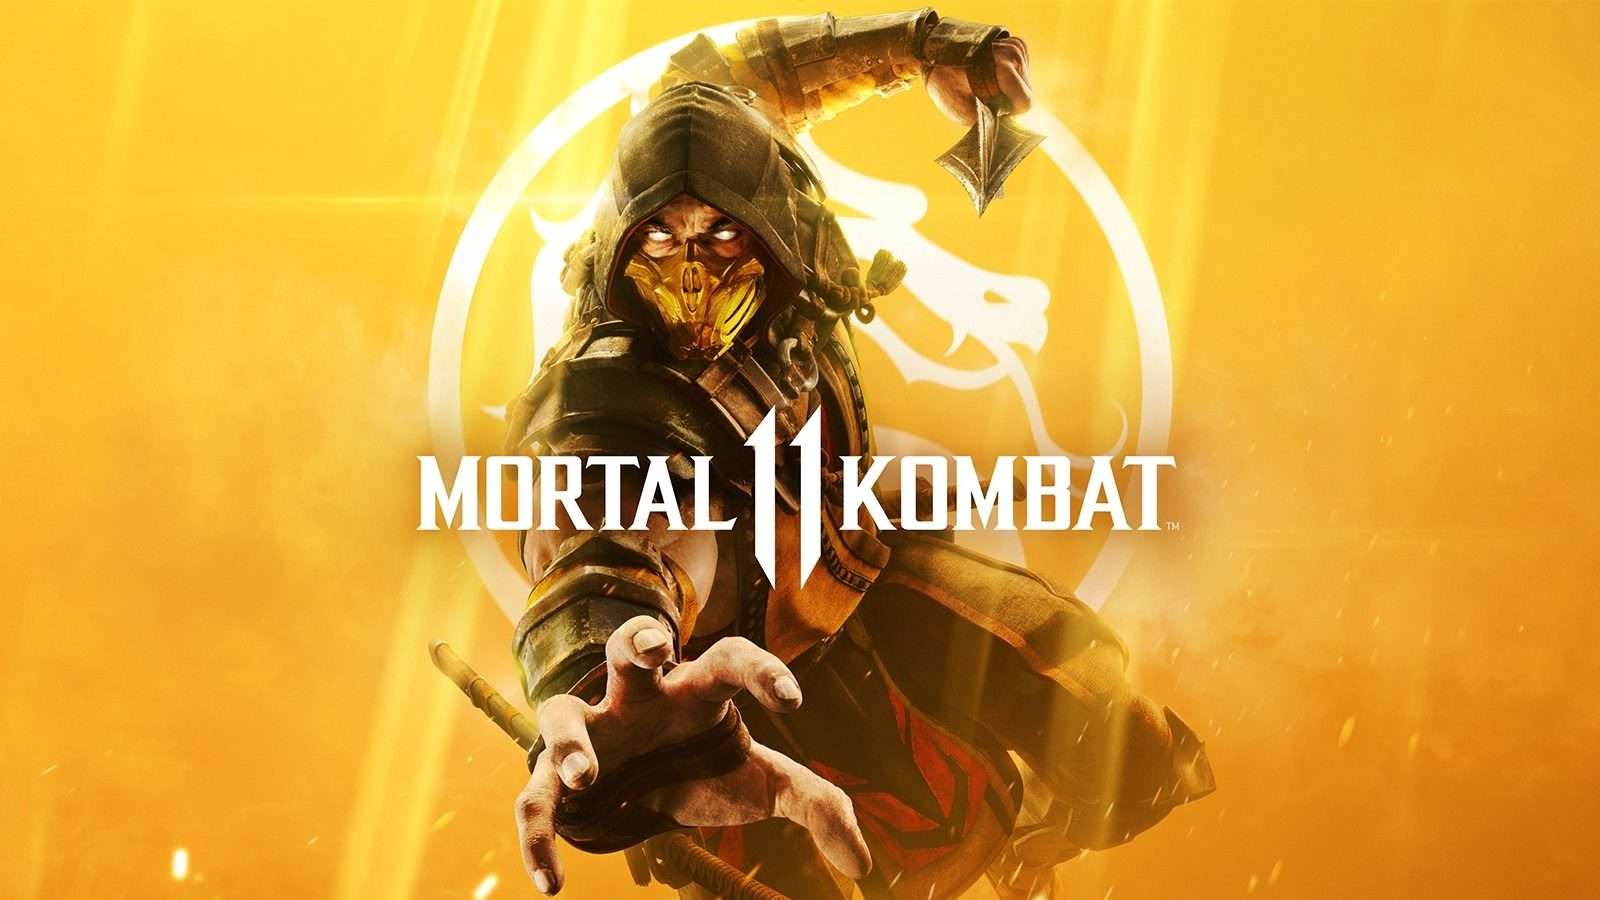 Mortal Kombat 11 gameplay reveal image